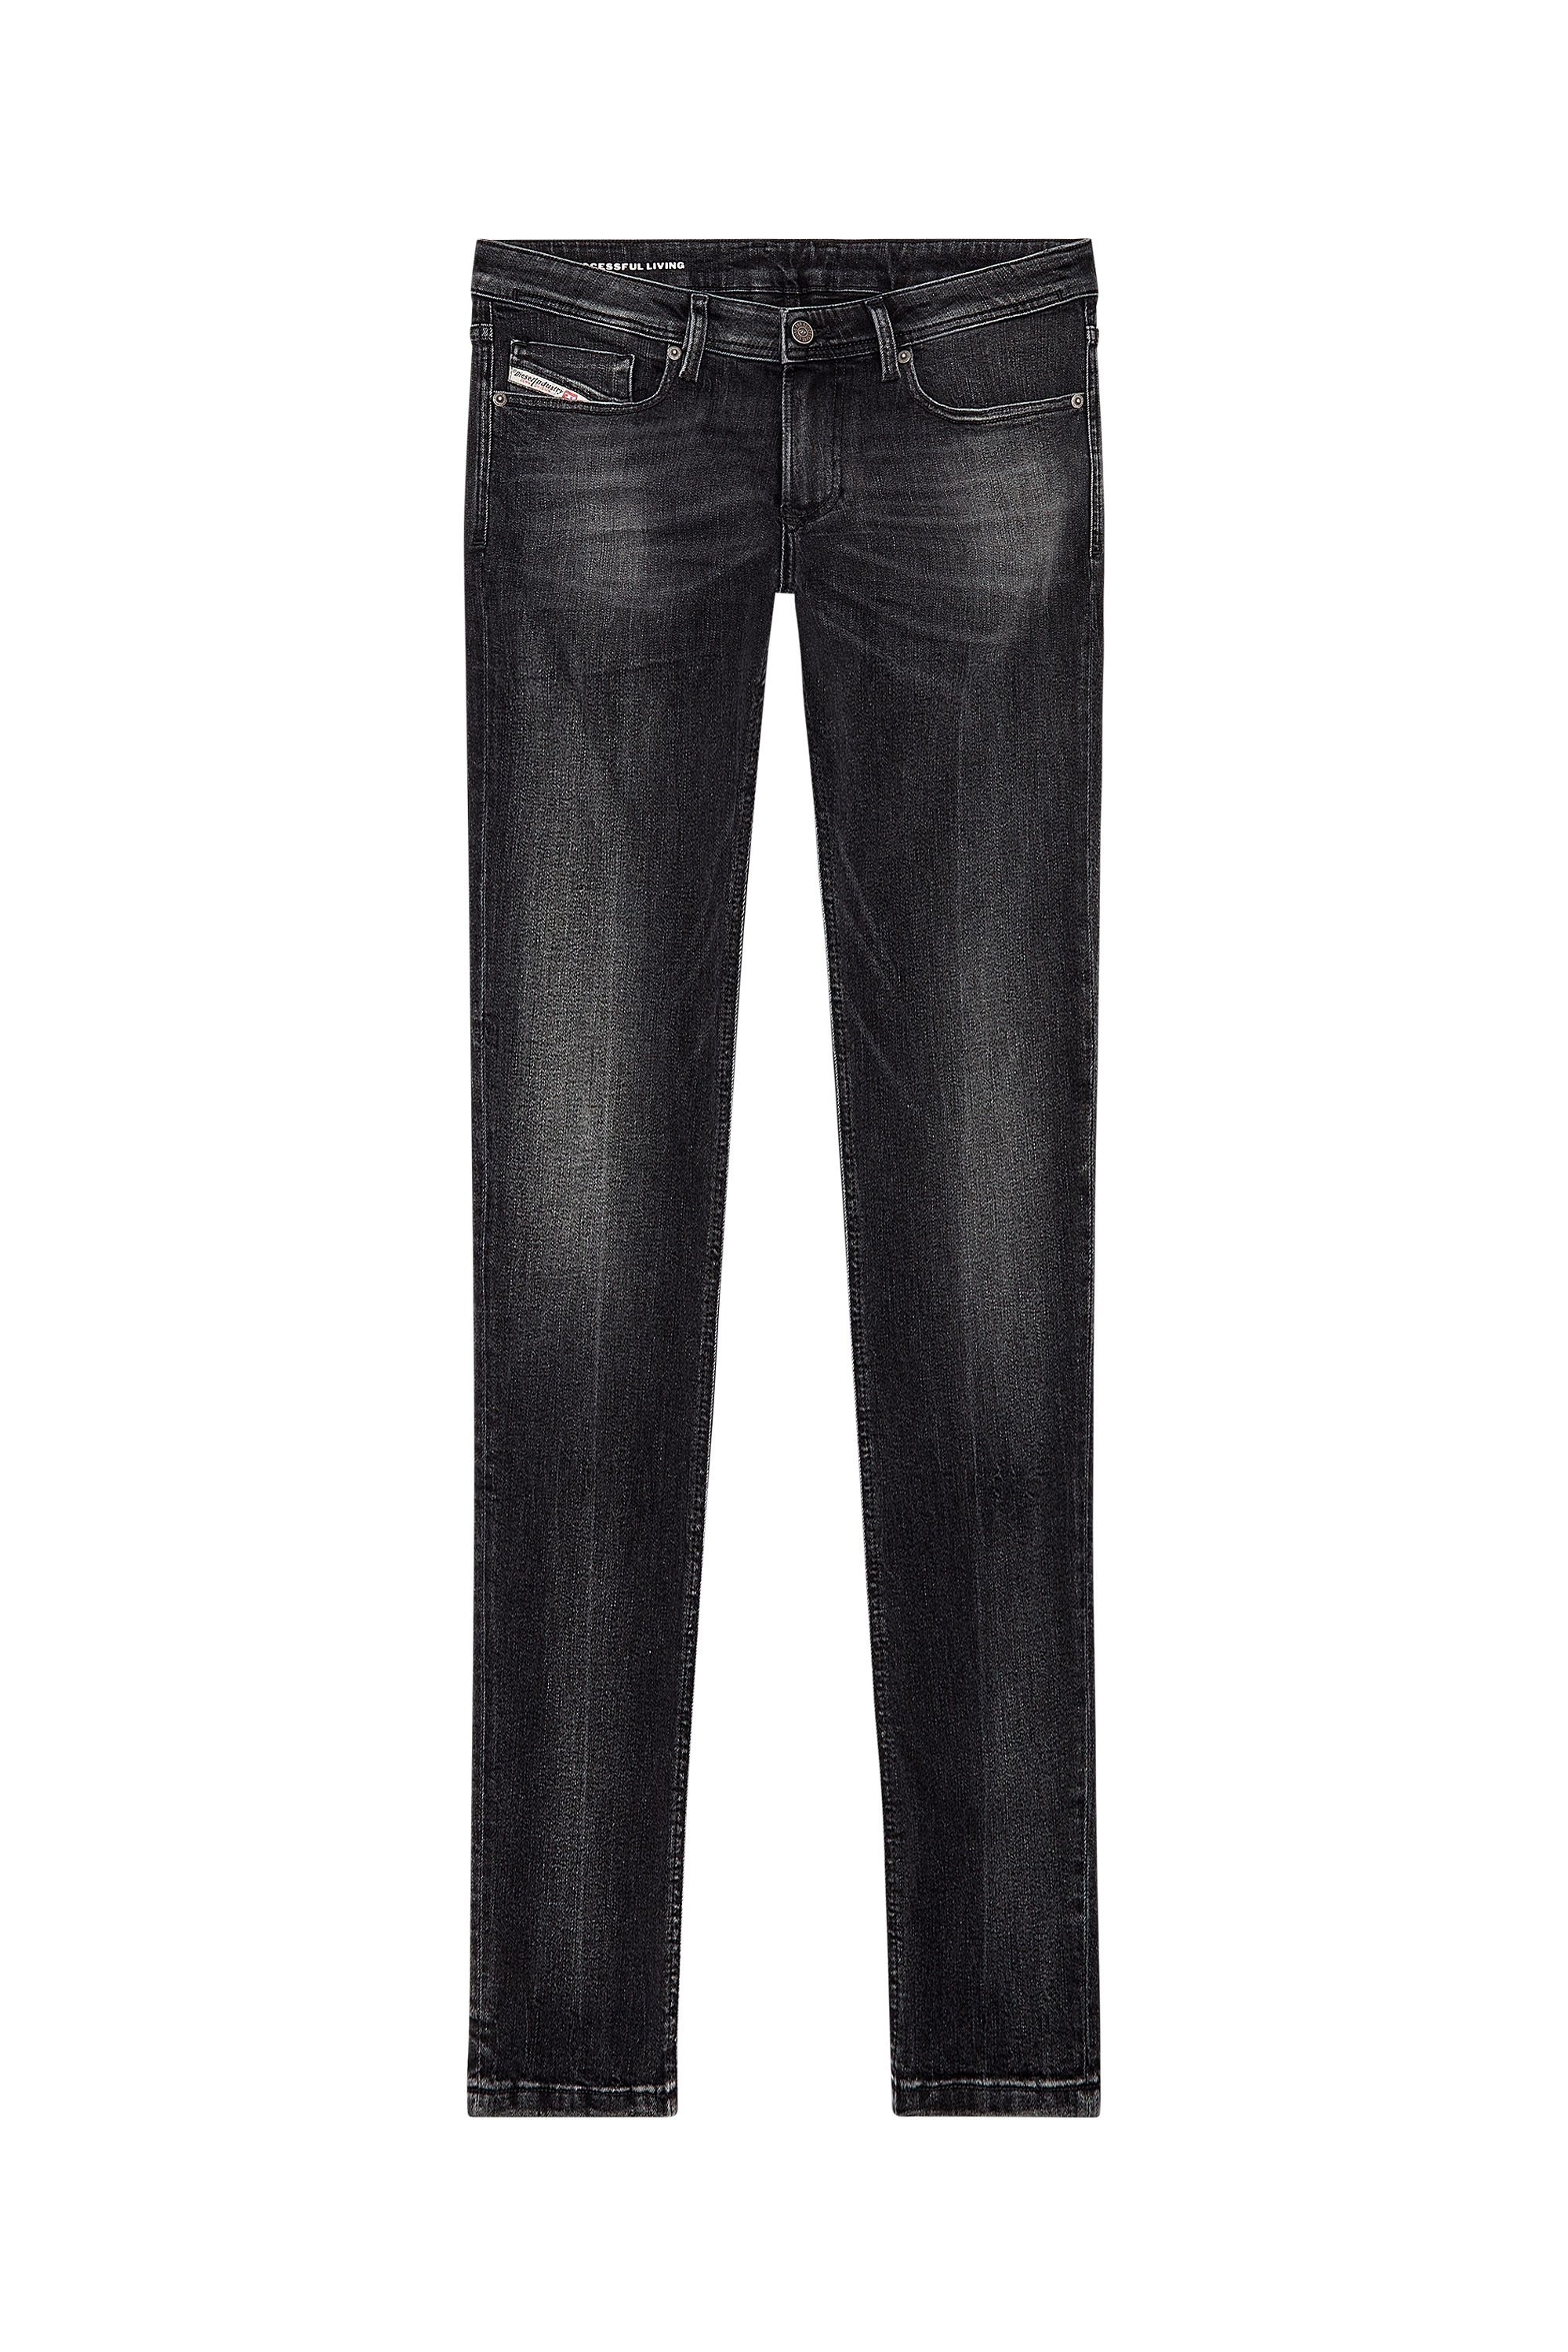 Diesel - Man Skinny Jeans 1979 Sleenker 0PFAX, Black/Dark grey - Image 5